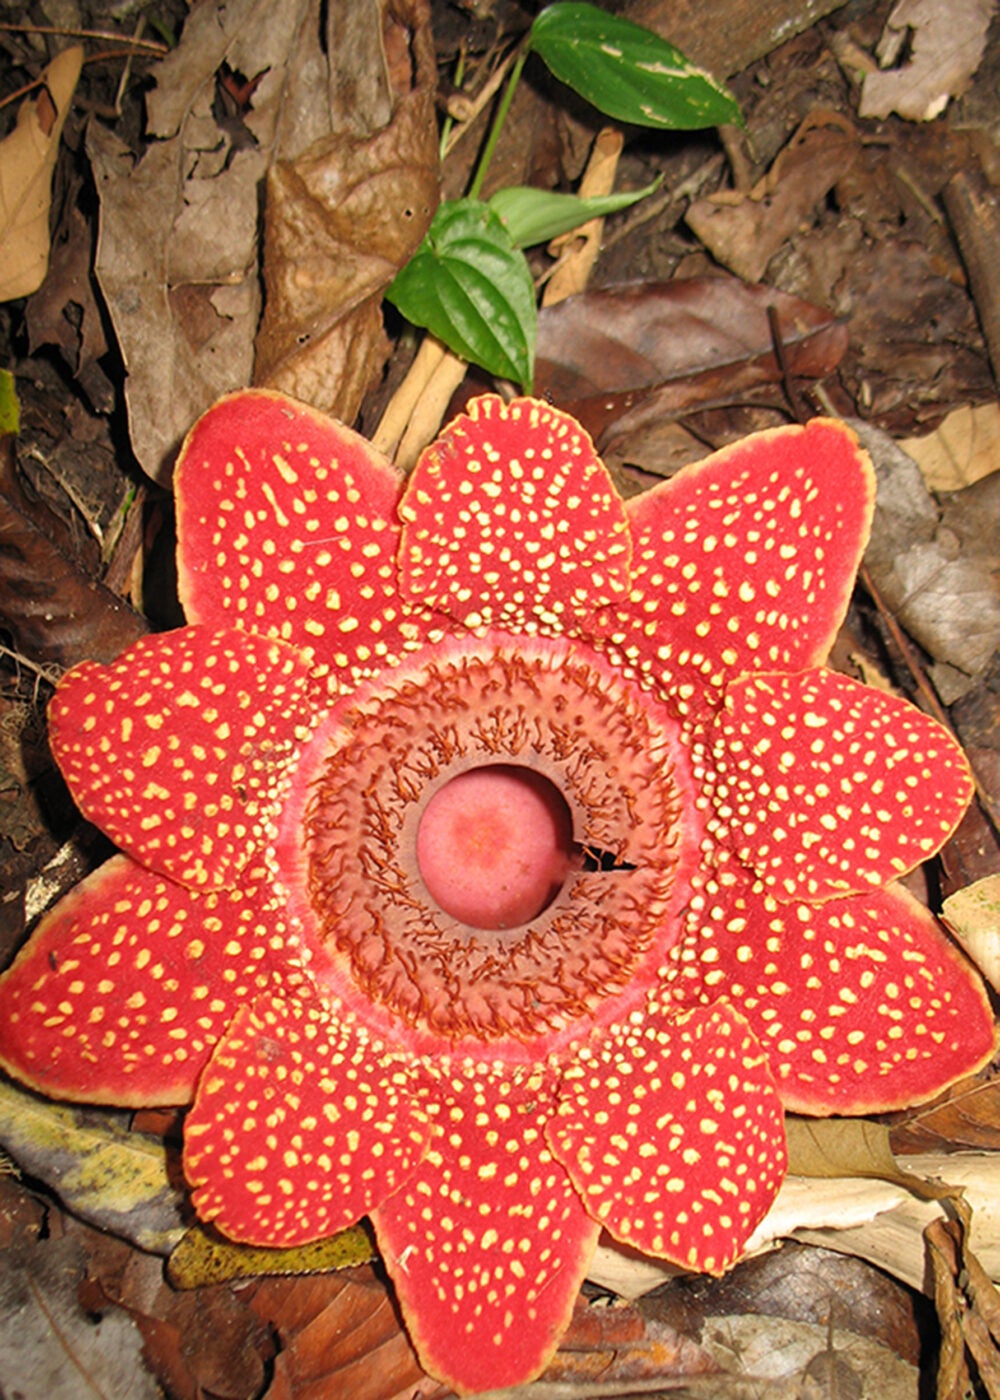 Sapria himalayana flower.